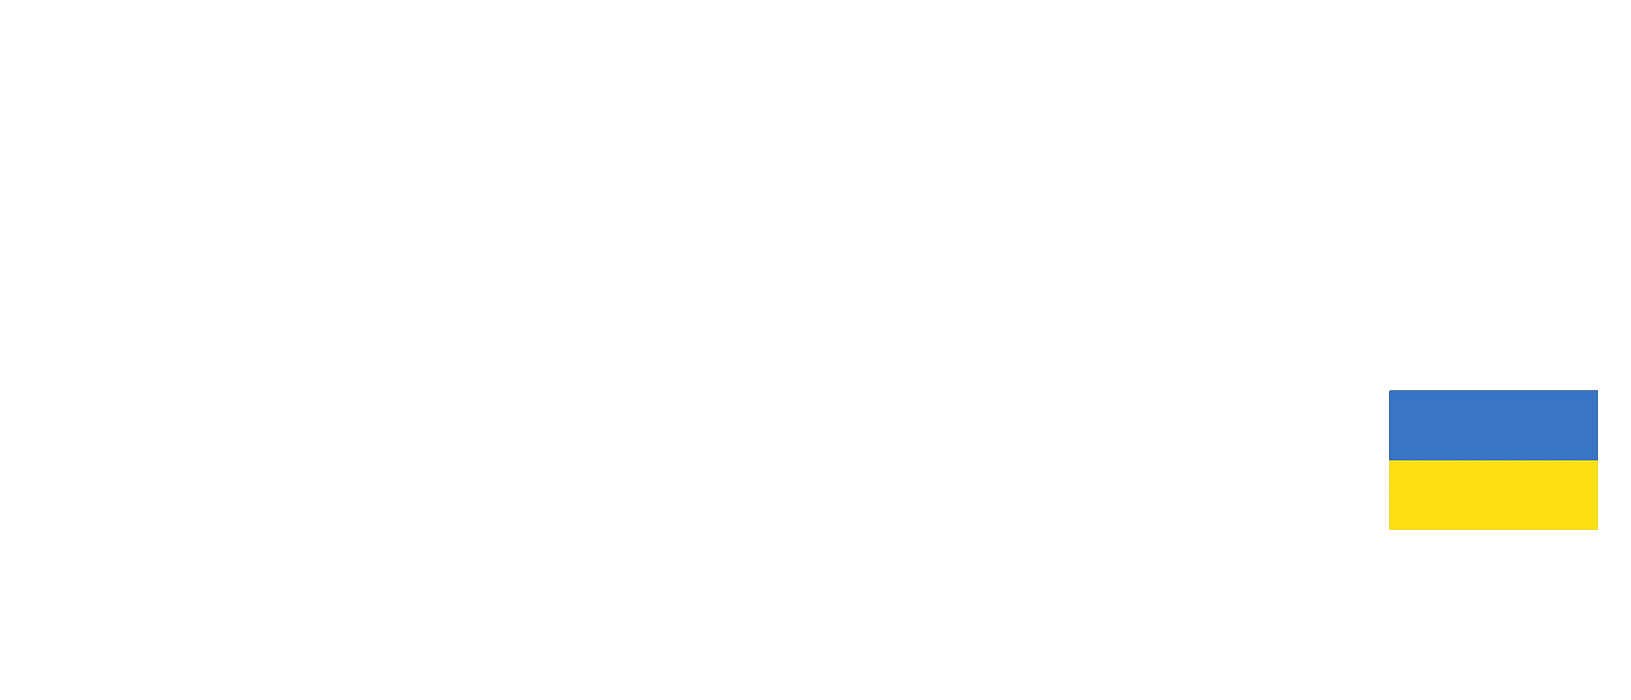 Сміливість - жити в Україні (Сміливість має два кольори)